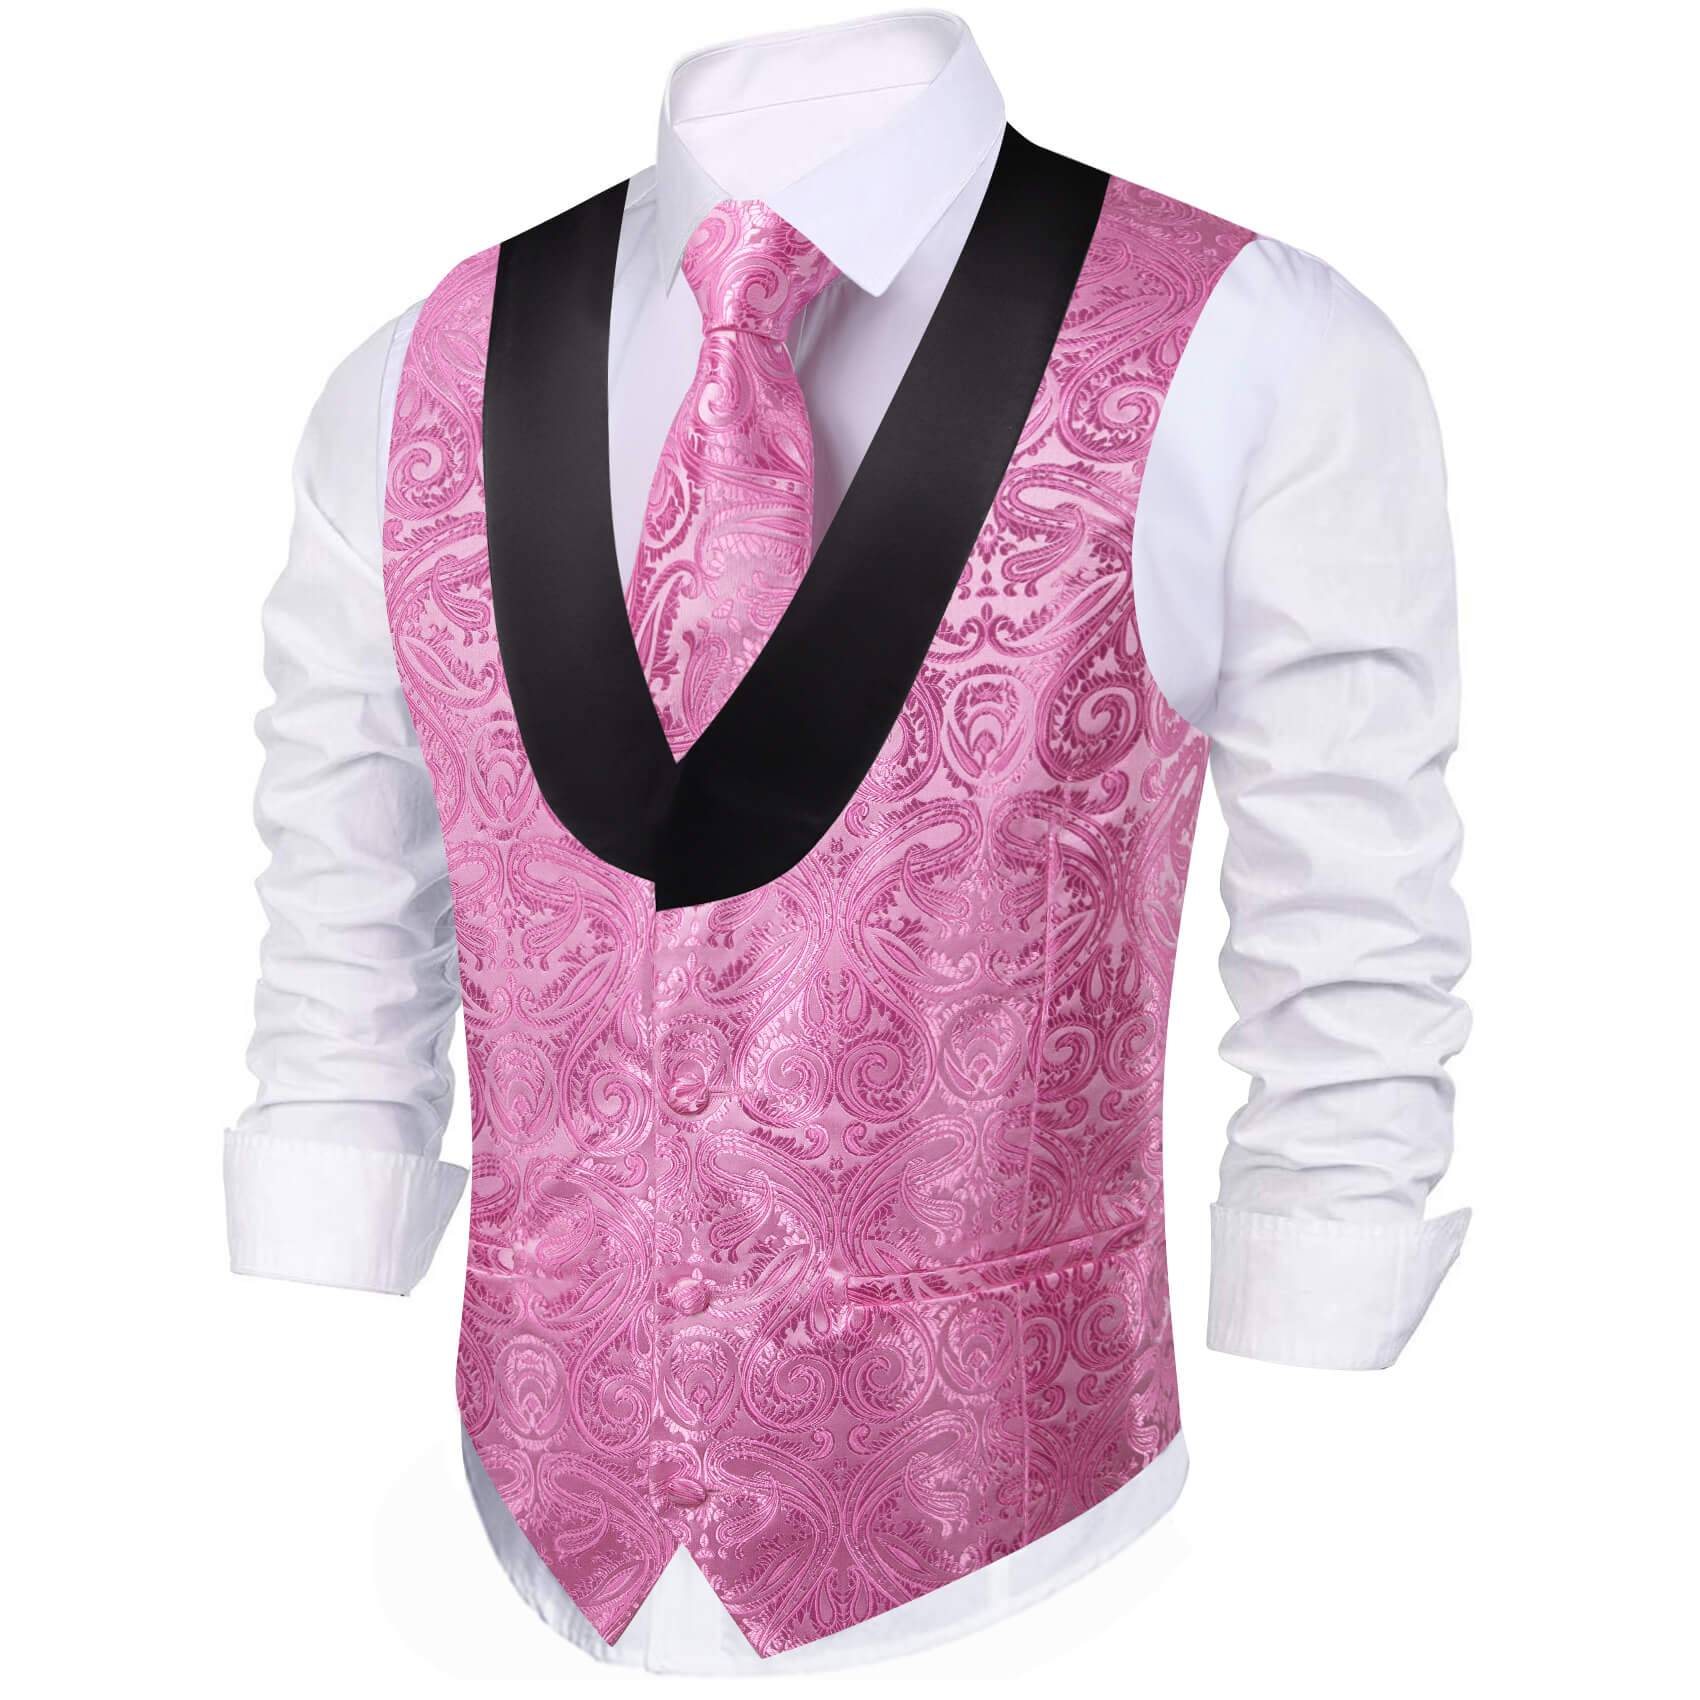  Hot Pink Paisley Men's Vest Necktie